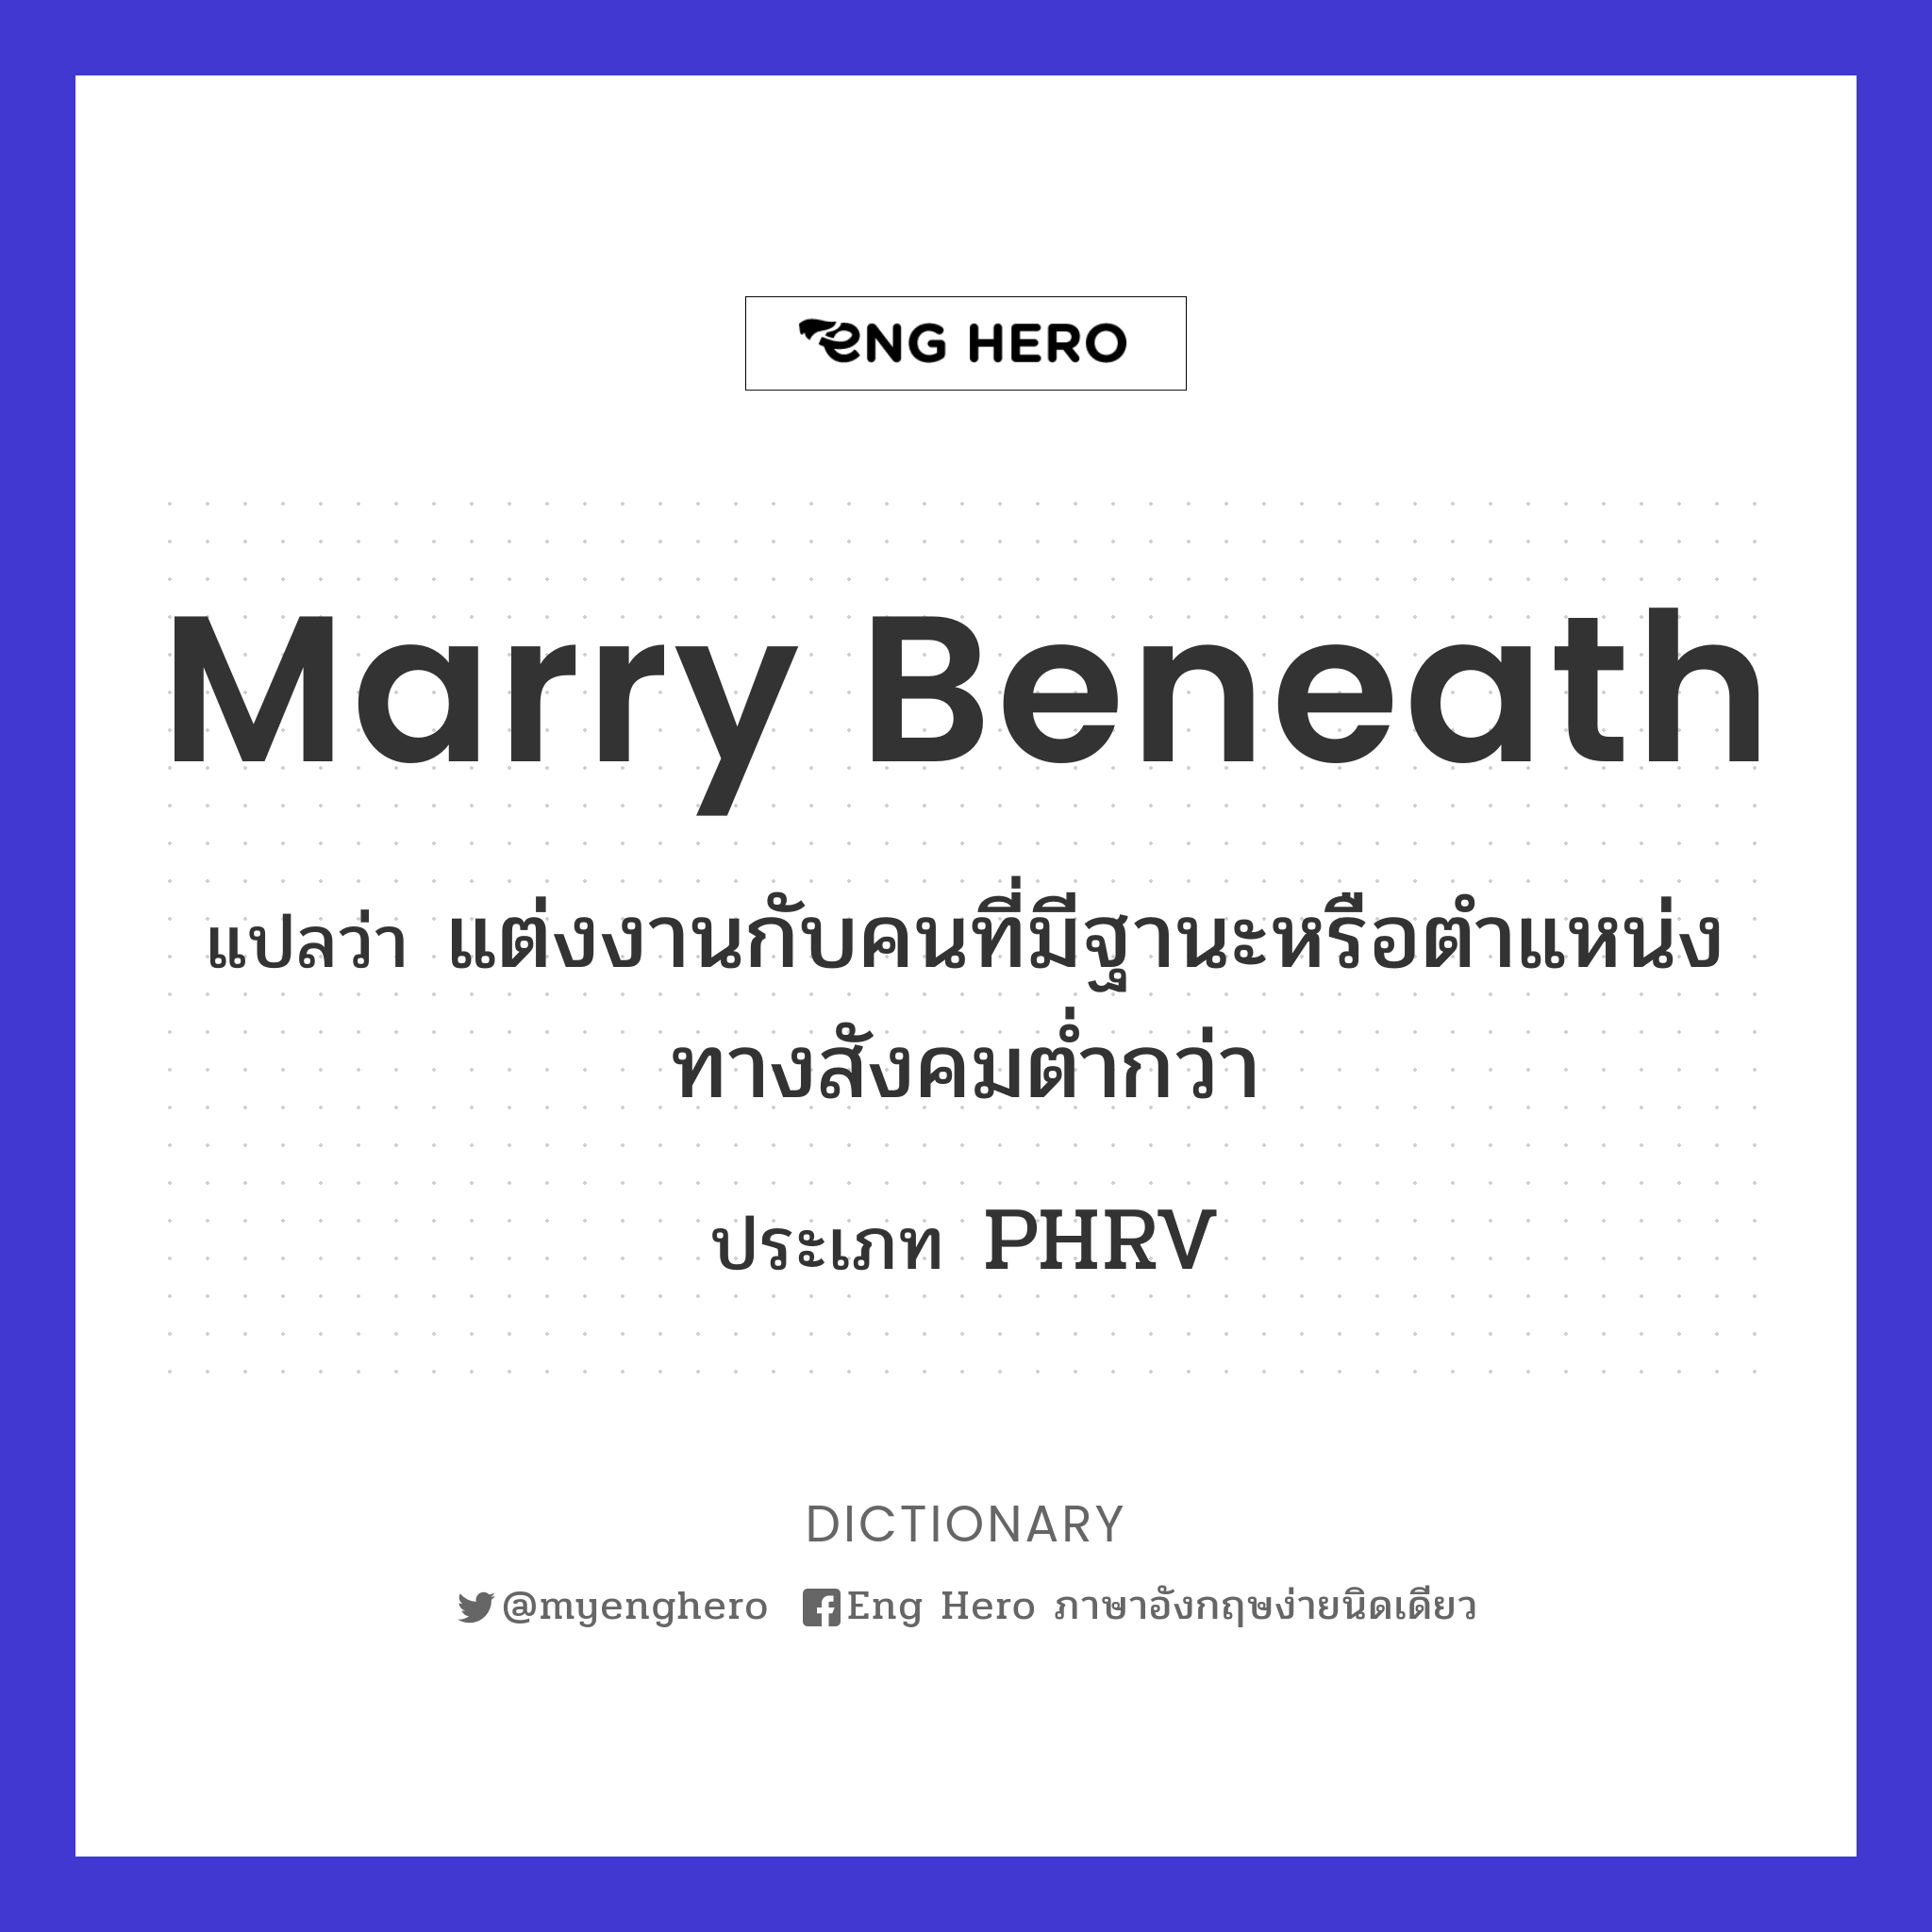 marry beneath